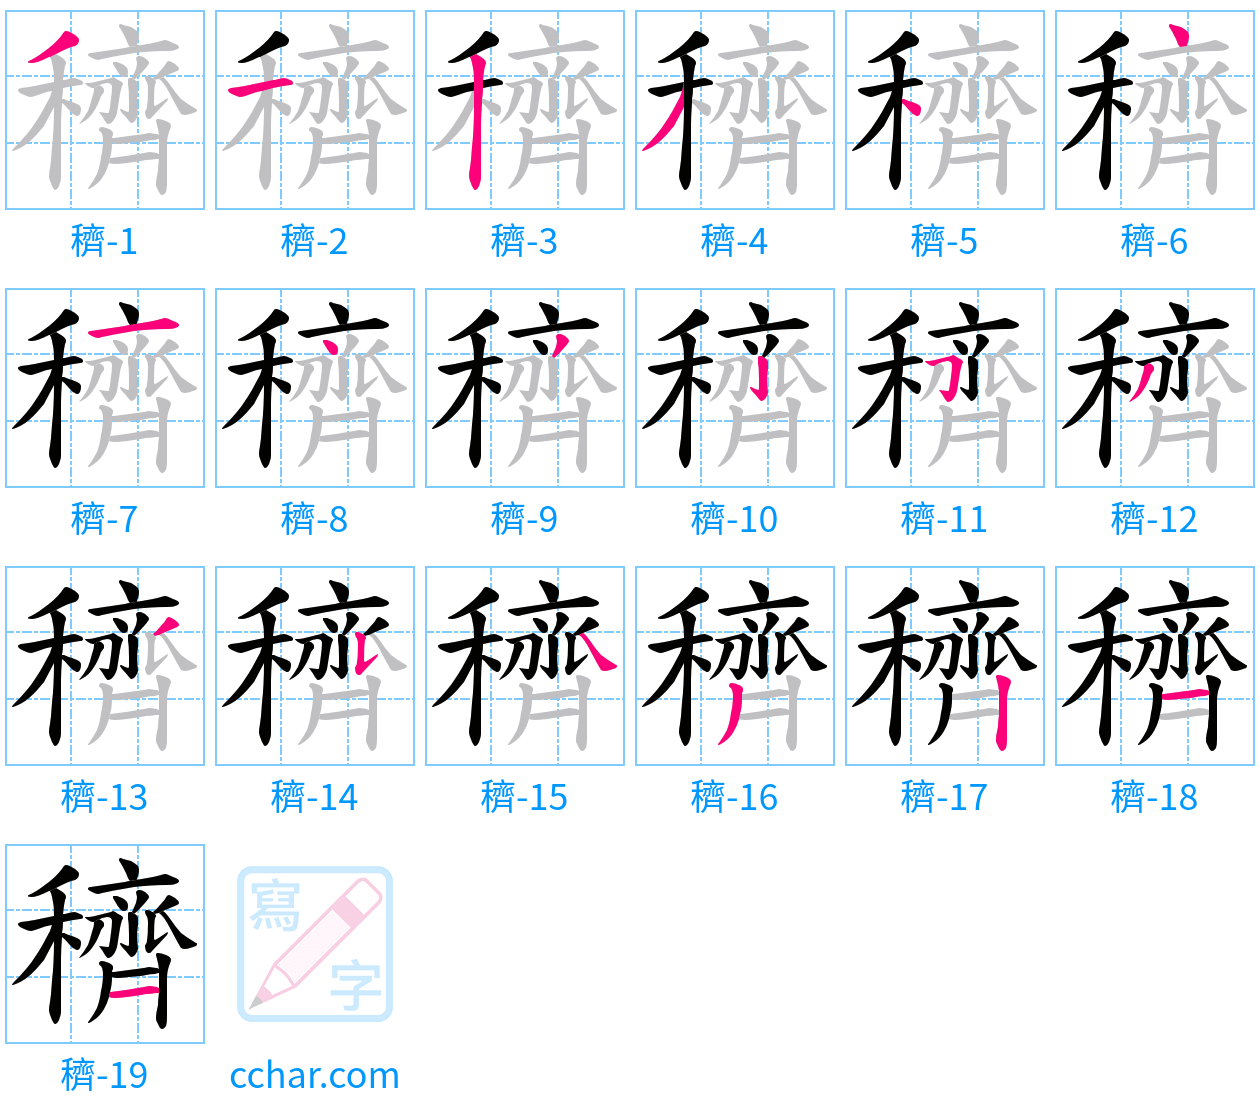 穧 stroke order step-by-step diagram